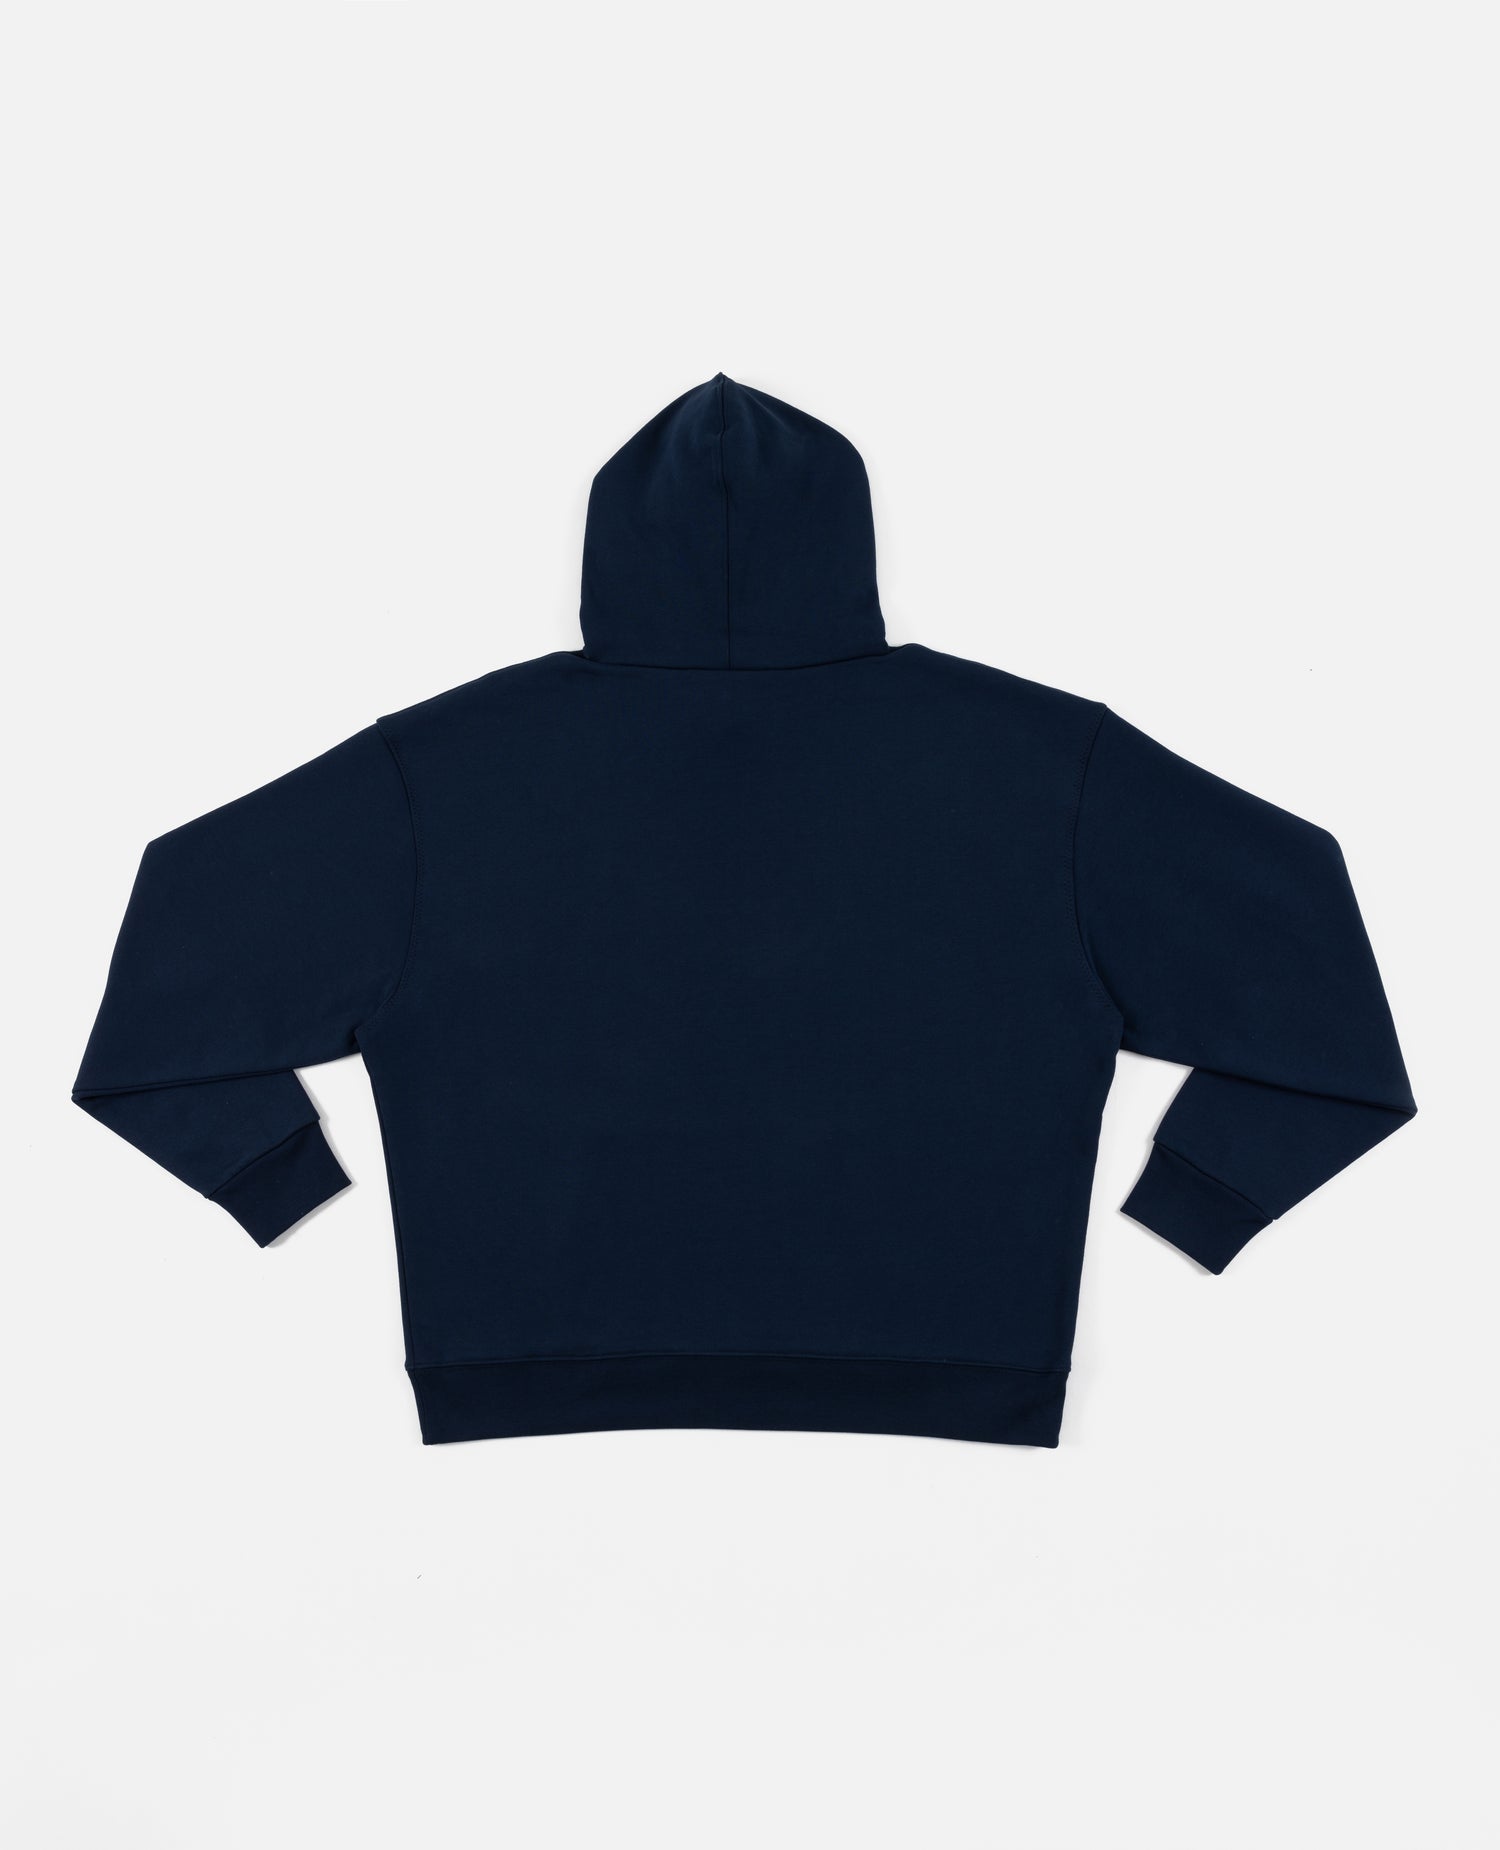 Patta x Best Company Twa Twa Hooded Sweater (Navy)